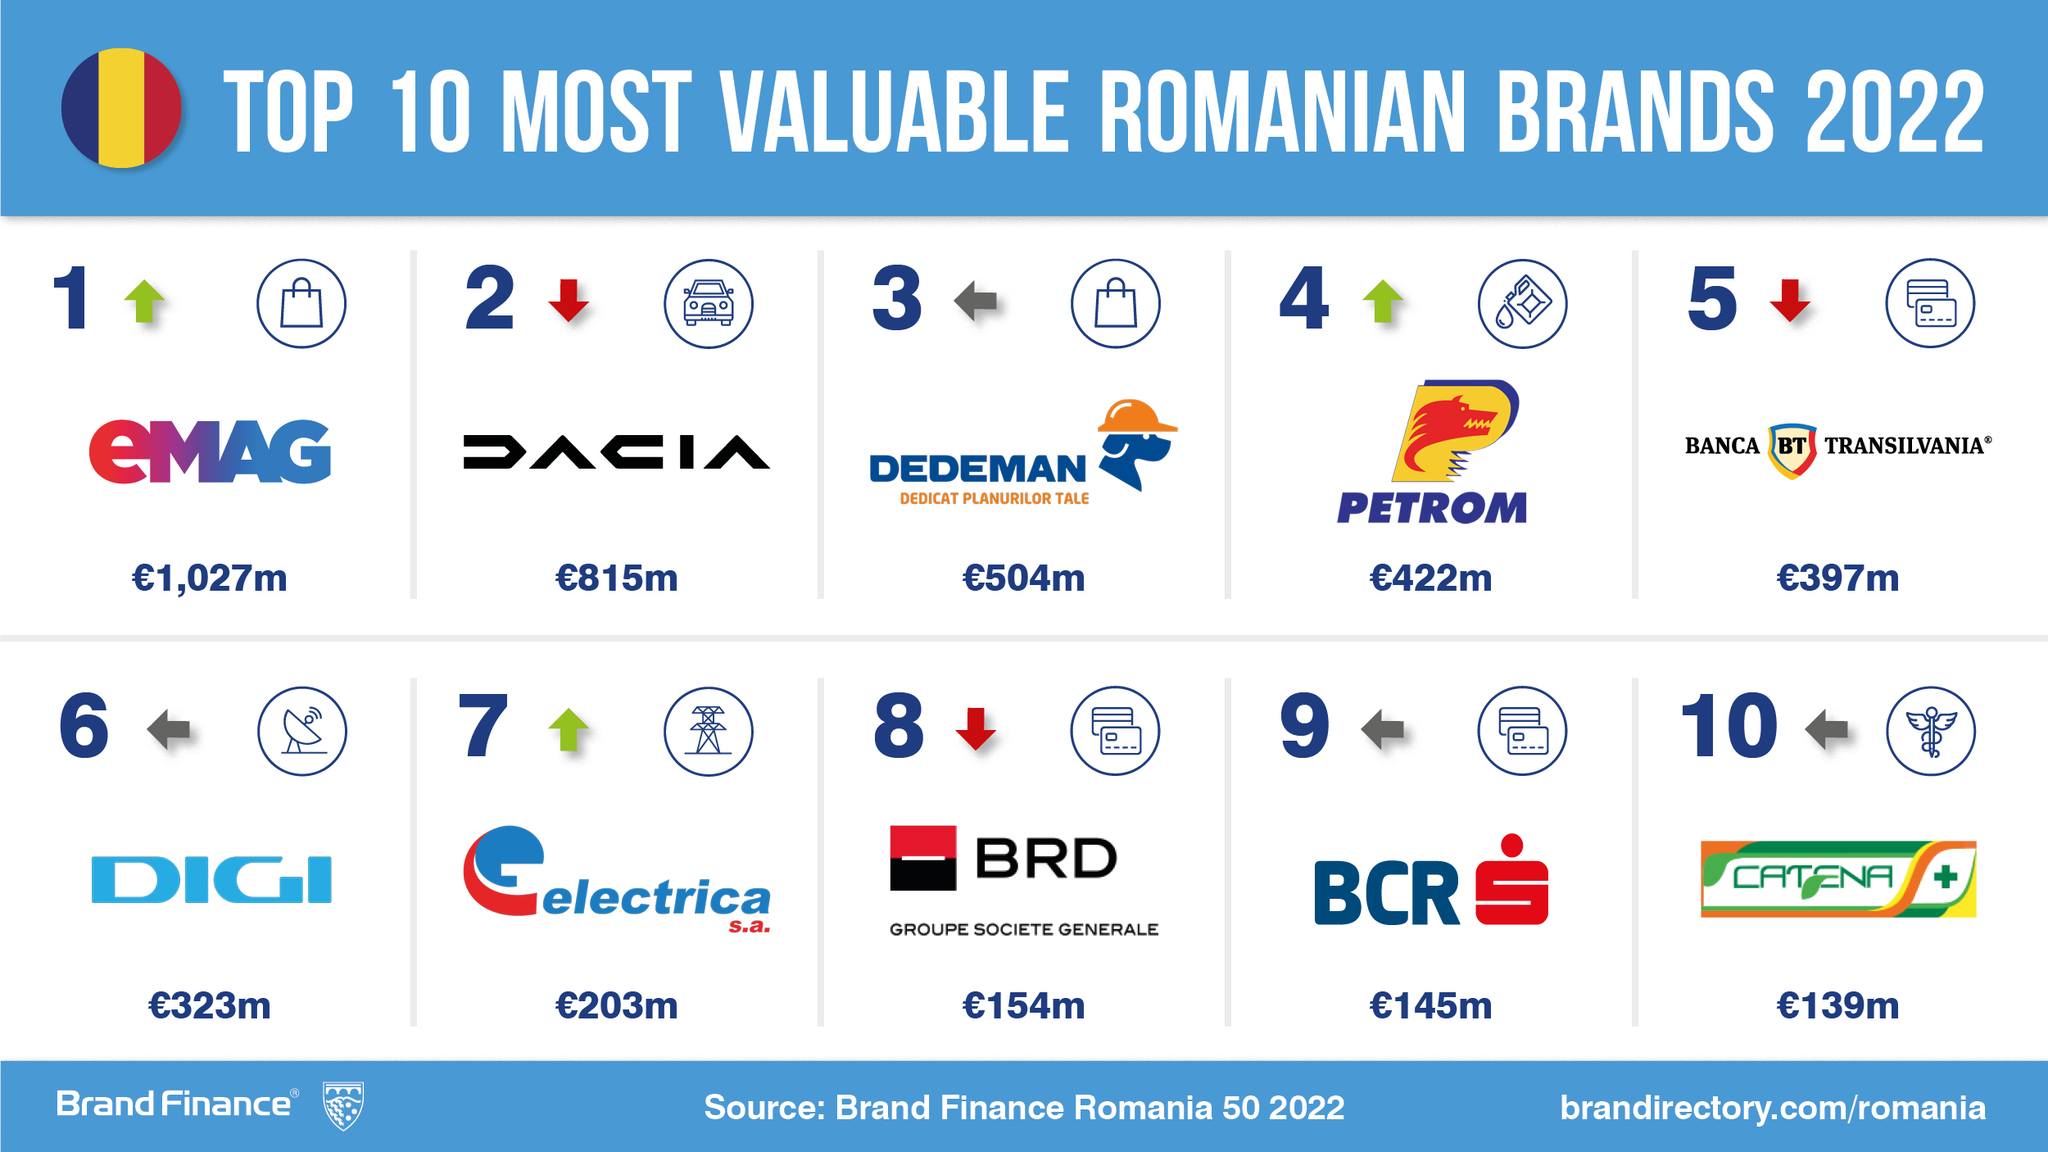 Schimbare istorică la vârful clasamentului celor mai valoroase branduri românești. Motivul pentru care eMAG a detronat Dacia